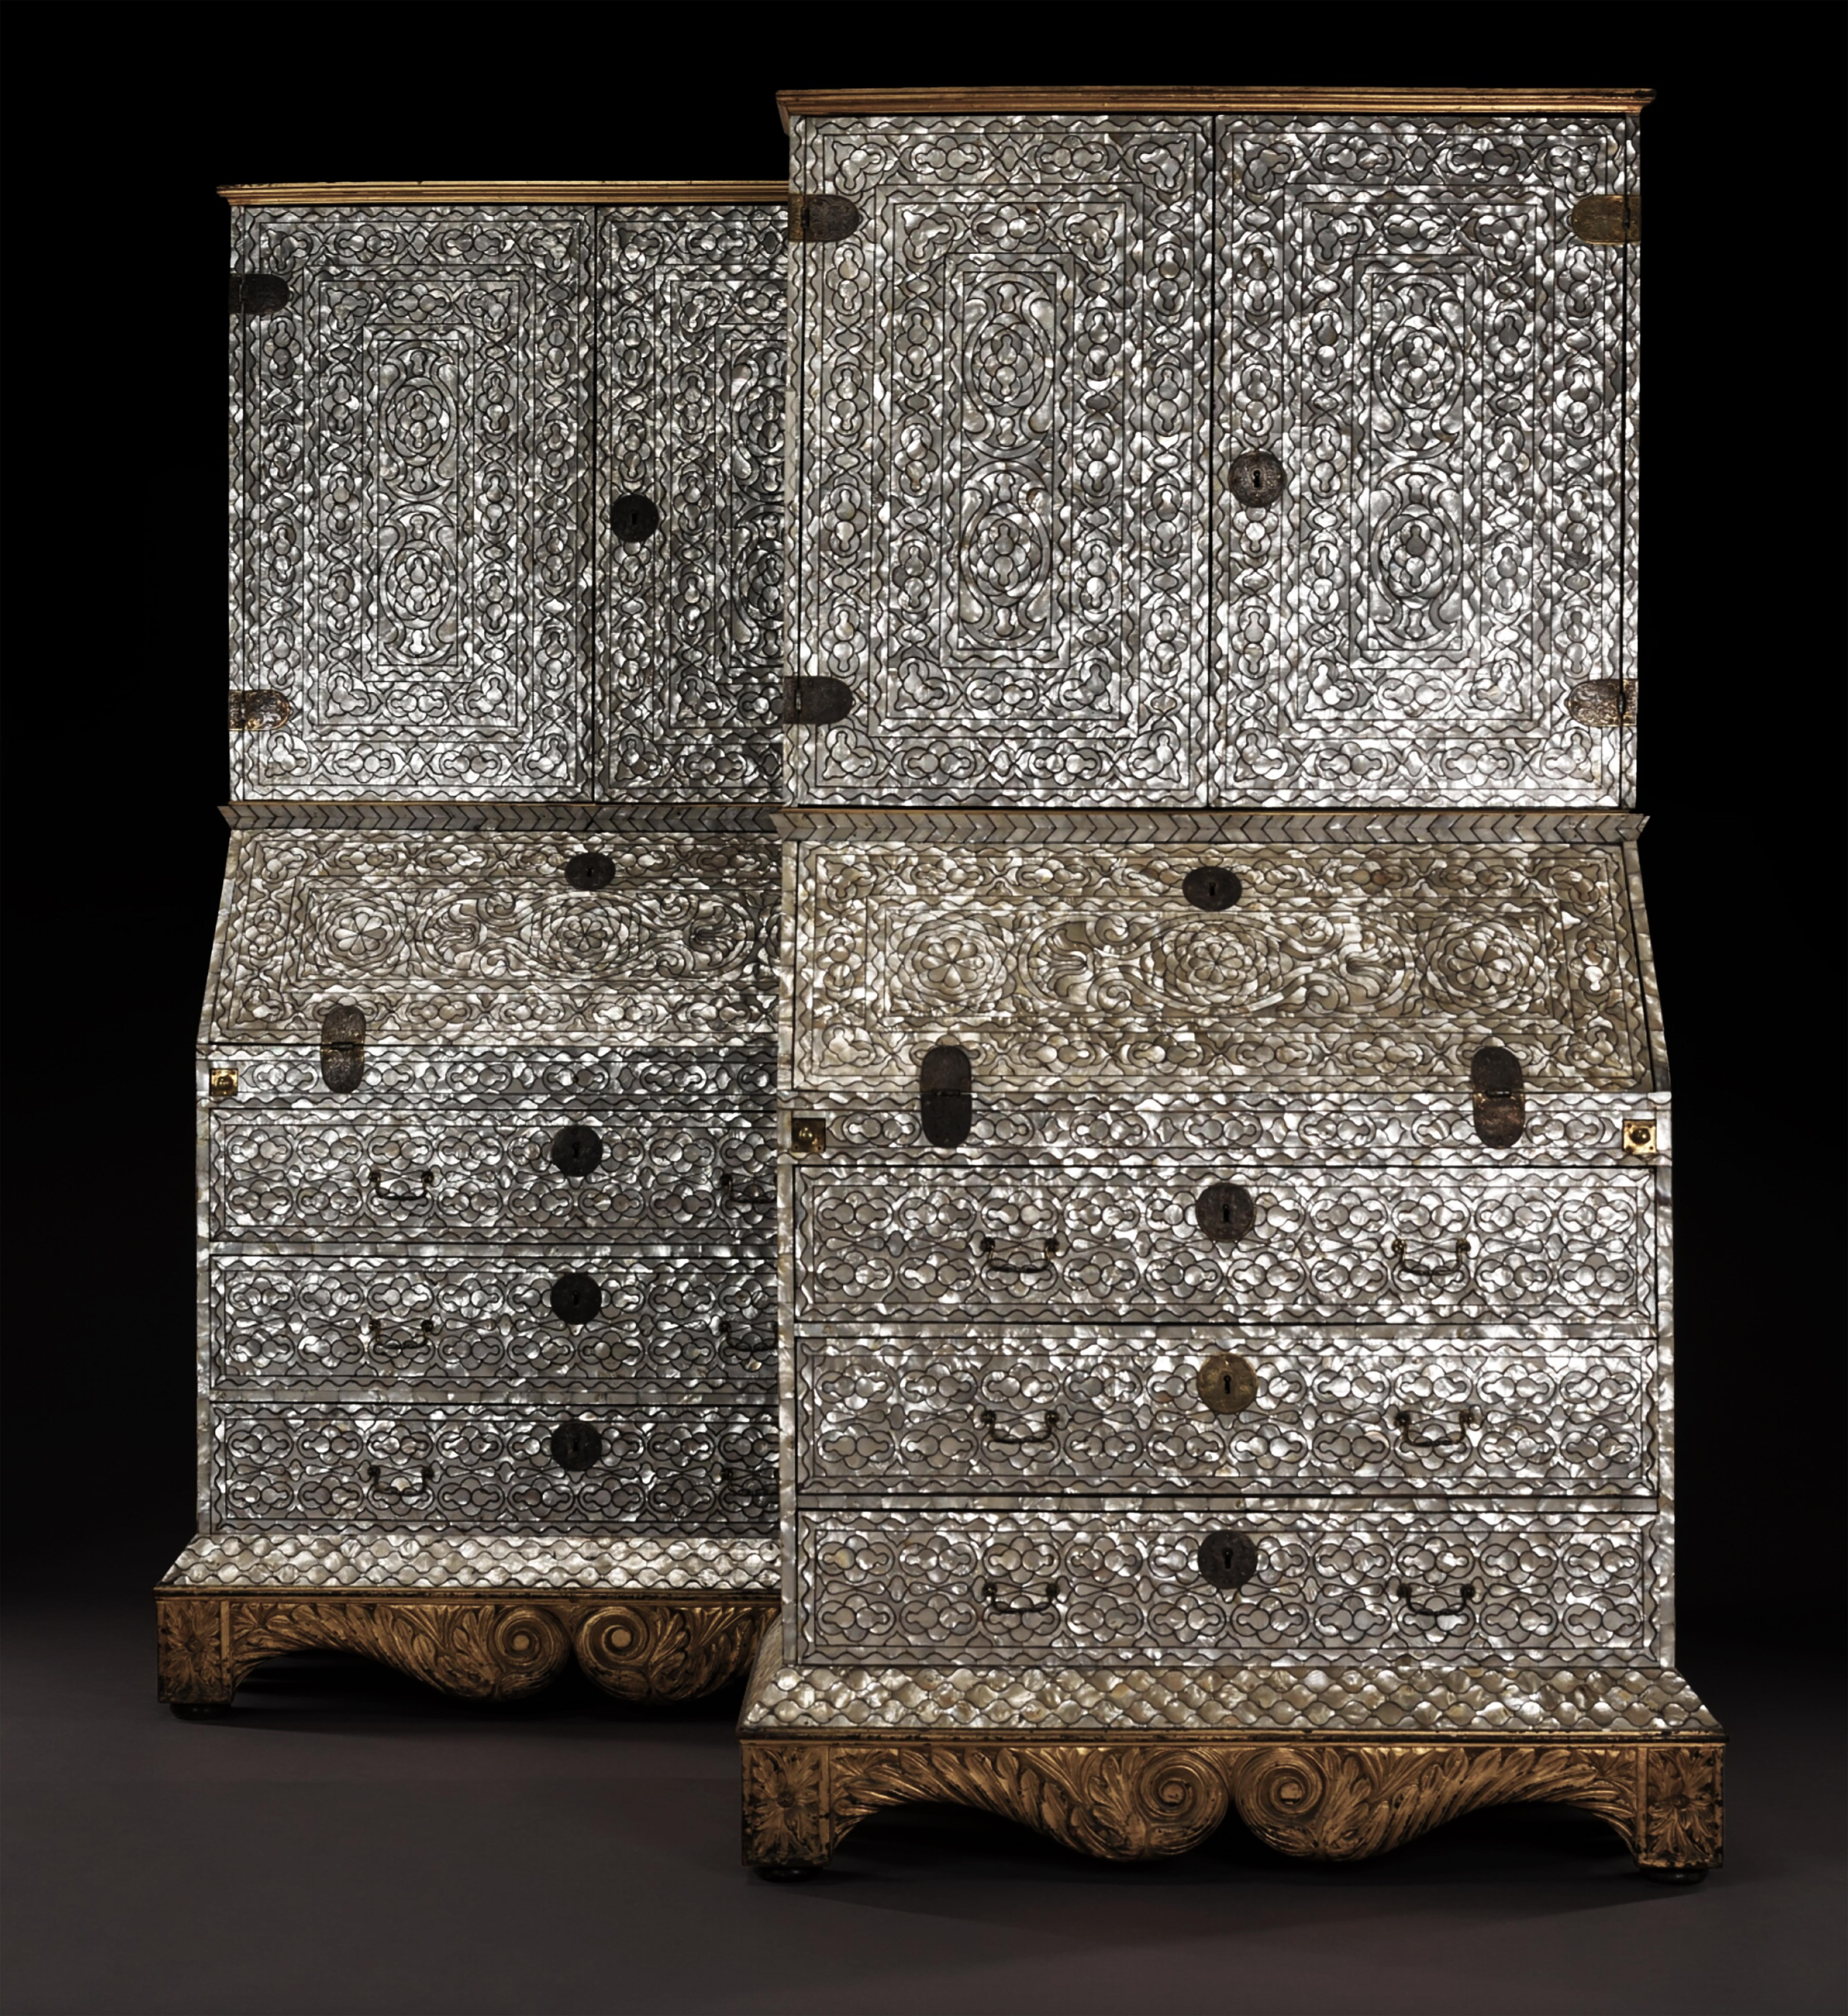 Vice-royauté du Pérou, Lima, XVIIIe siècle, vers 1720-1760

Chacune avec une corniche moulée en bois doré et sur une base en bois doré sculpté, probablement plus tardive et anglaise. Les armoires, avec des montures en argent, sont faites de cèdre et